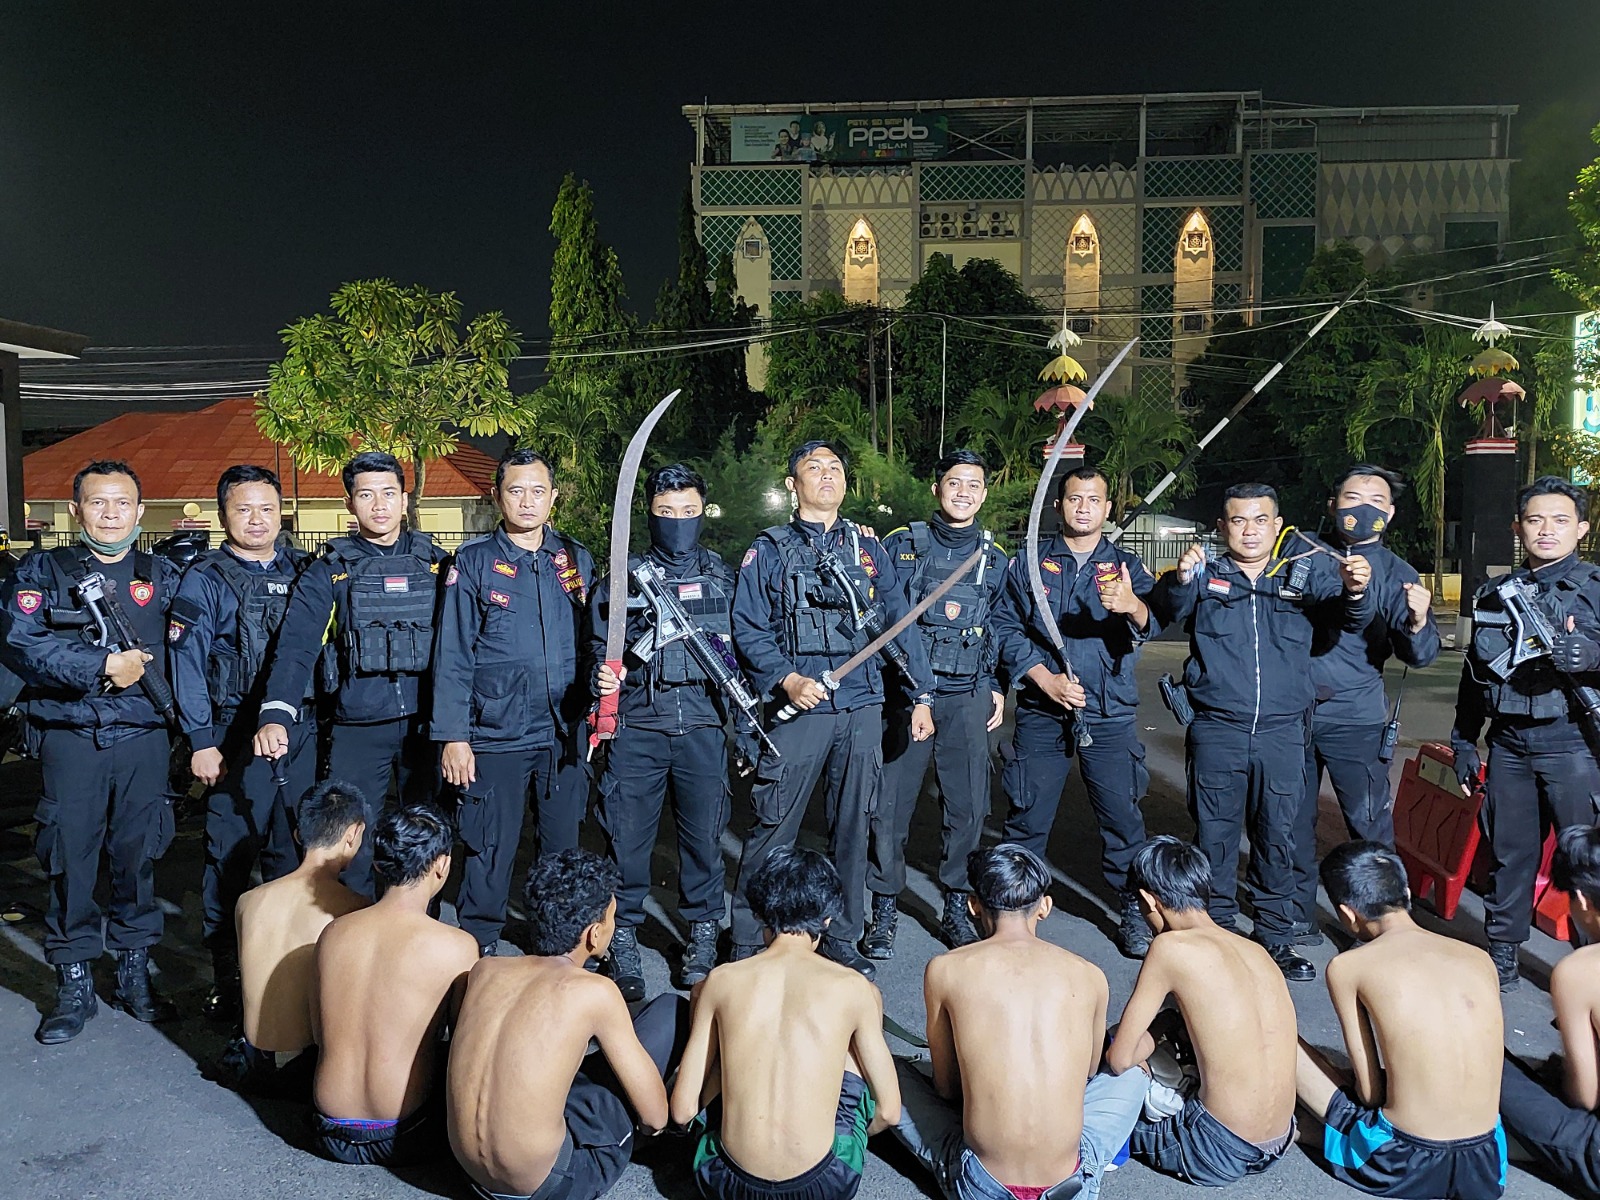 Gagalkan Aksi Tawuran, Polisi di Bandar Lampung Amankan 11 Orang Anggota Genk Motor